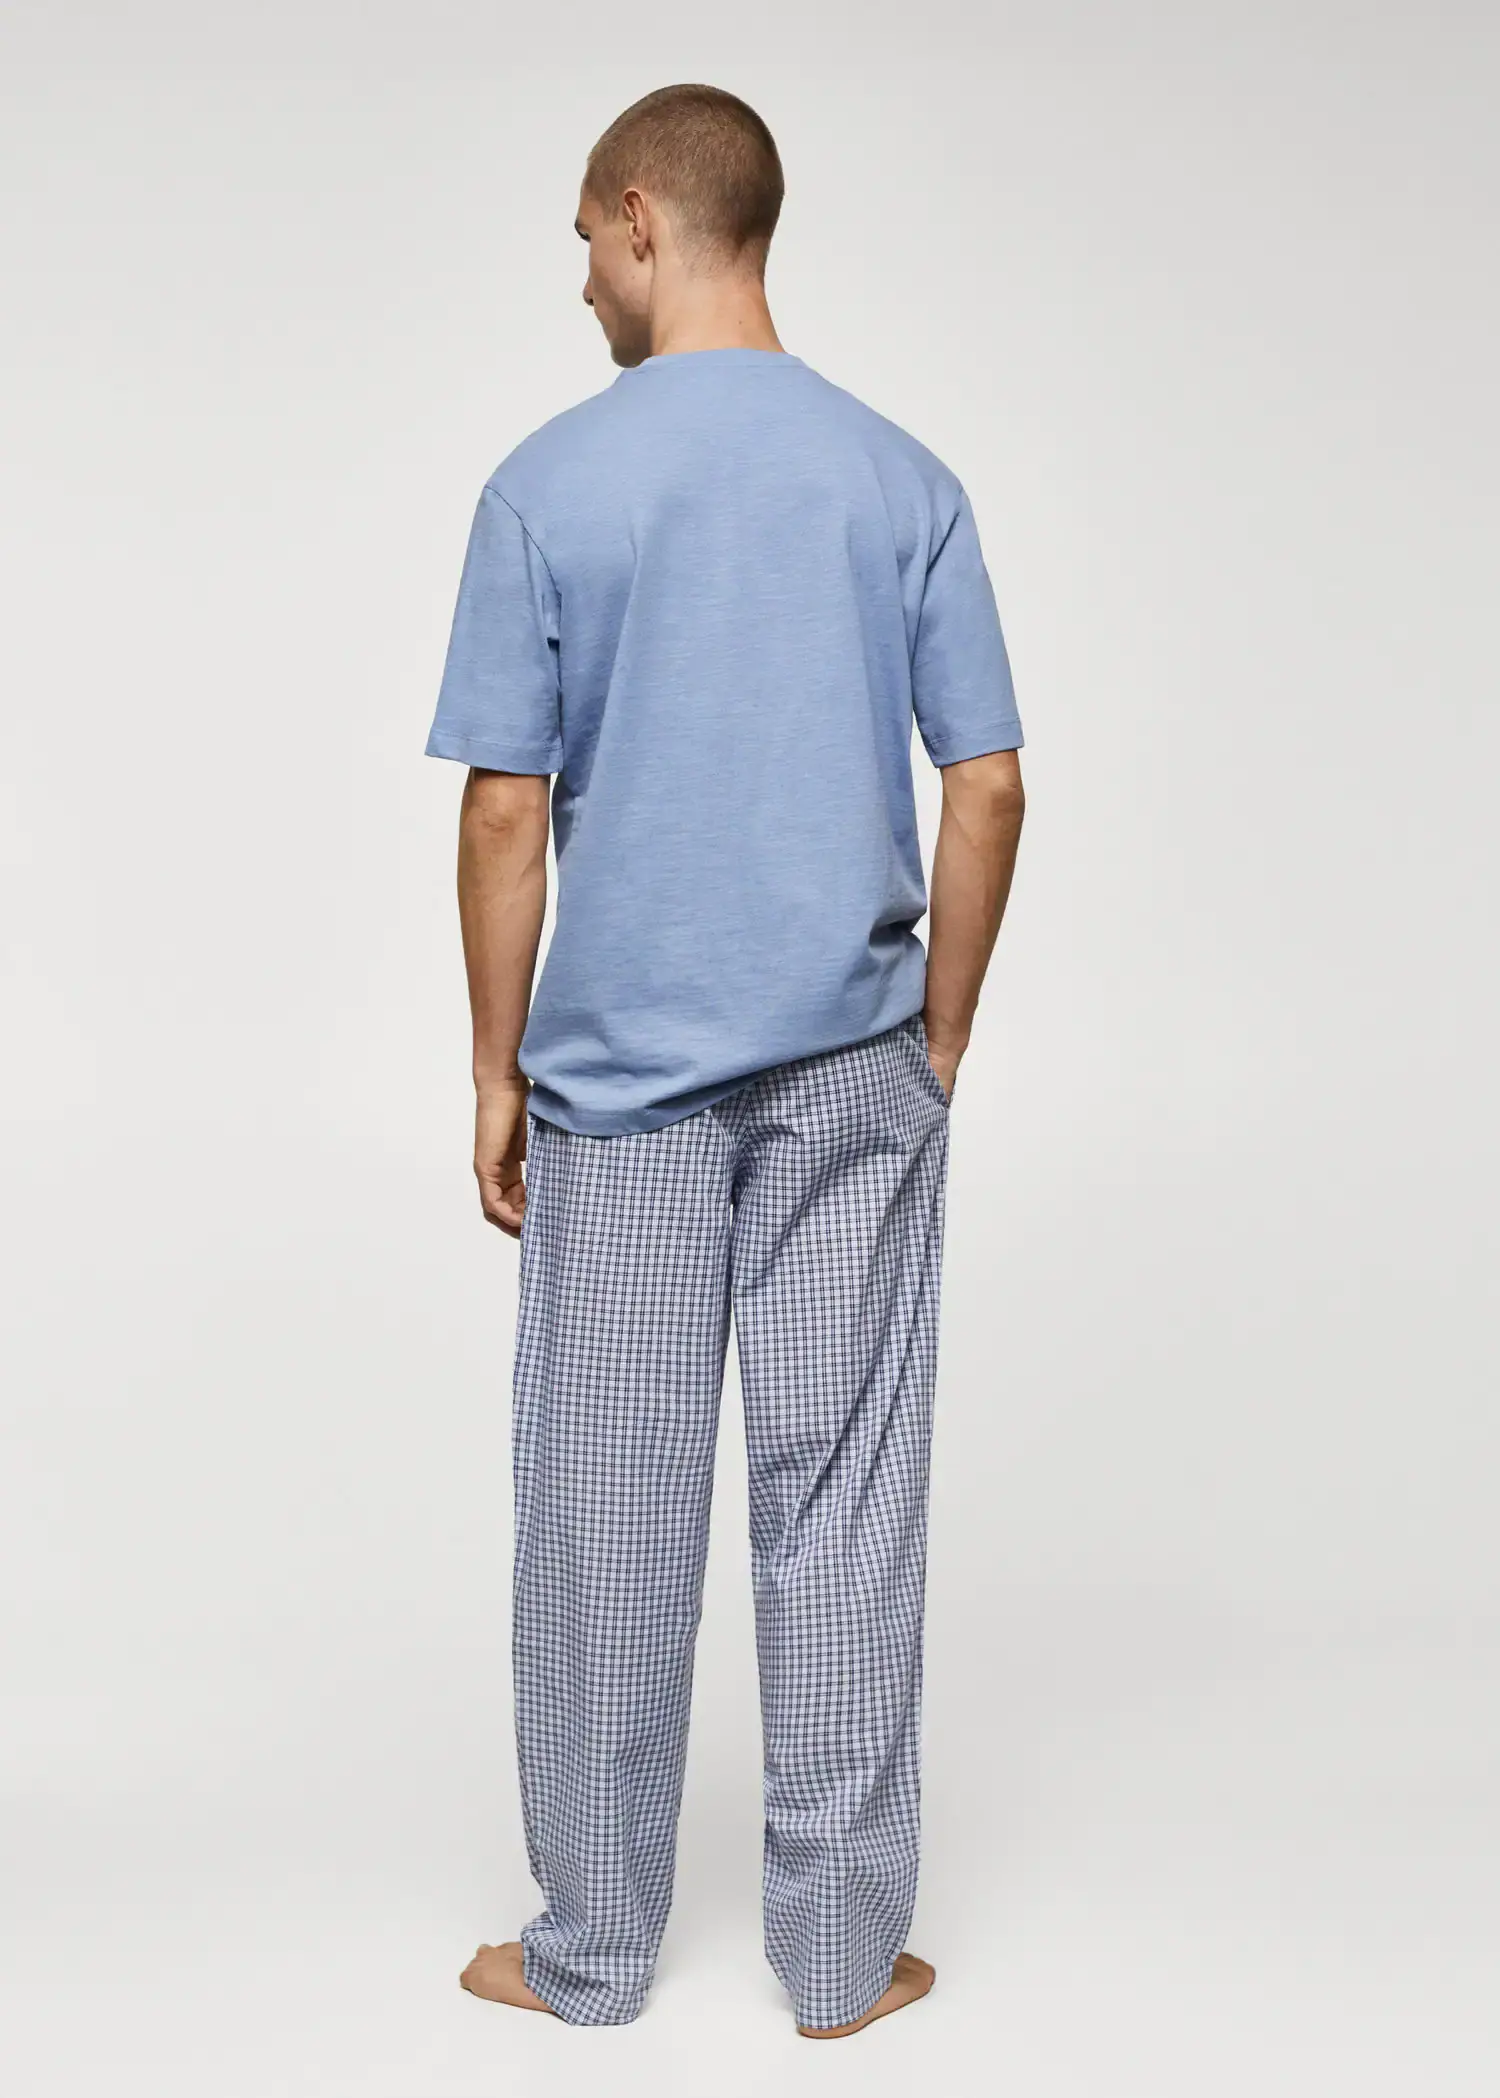 Mango Pack pijama algodón cuadros. 3